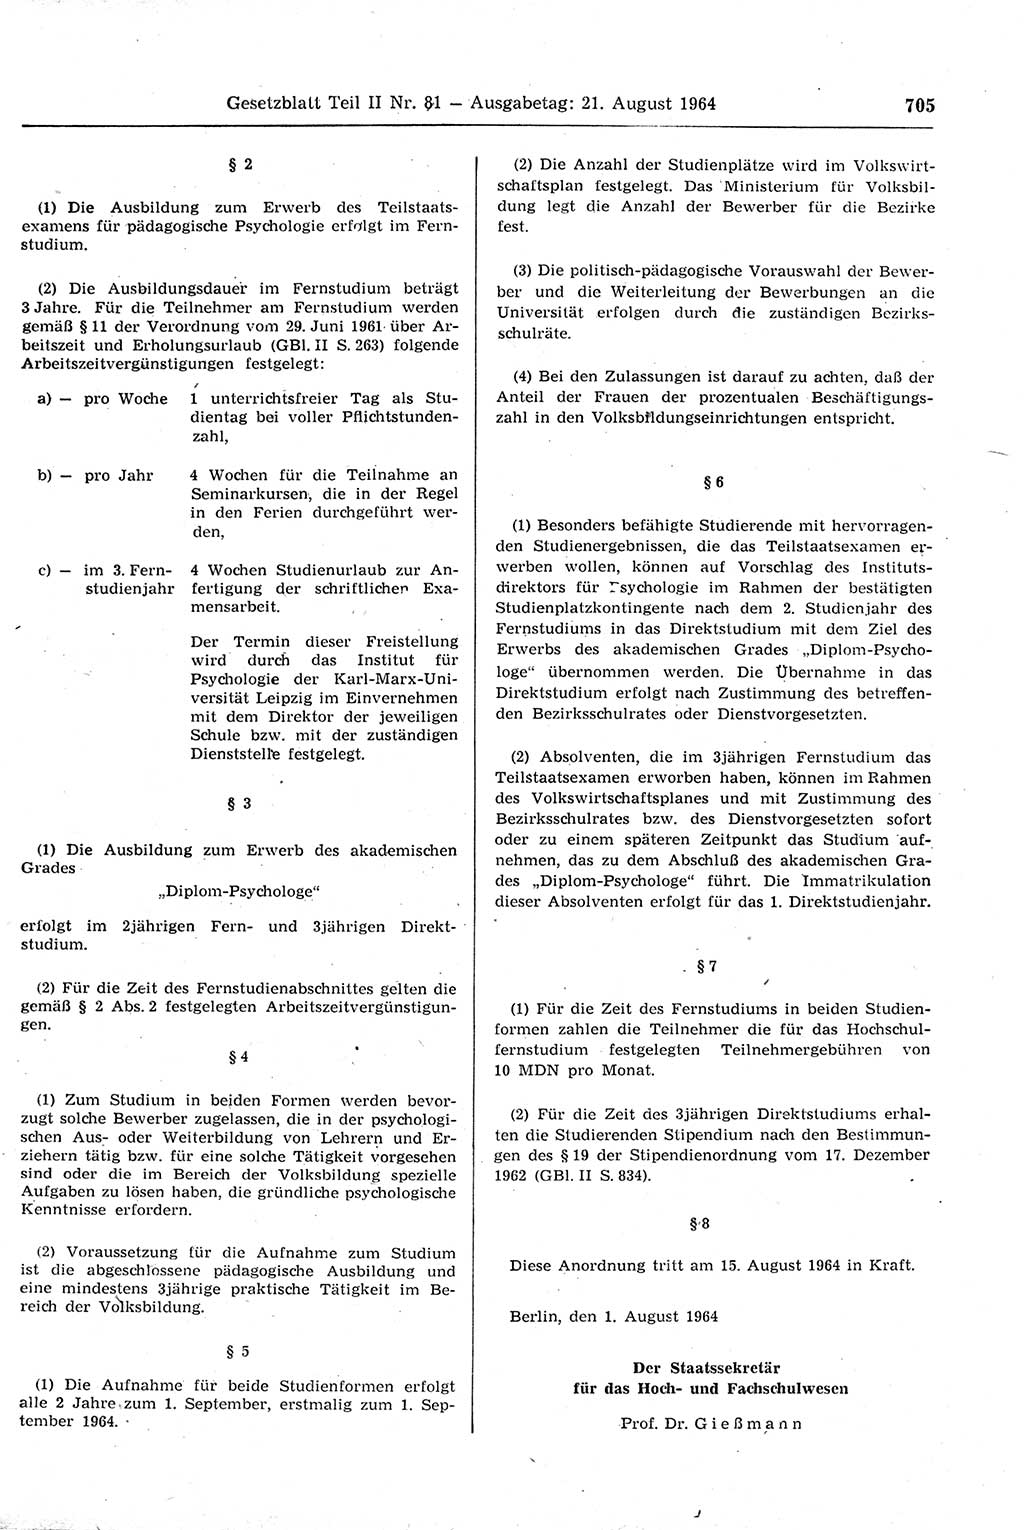 Gesetzblatt (GBl.) der Deutschen Demokratischen Republik (DDR) Teil ⅠⅠ 1964, Seite 705 (GBl. DDR ⅠⅠ 1964, S. 705)